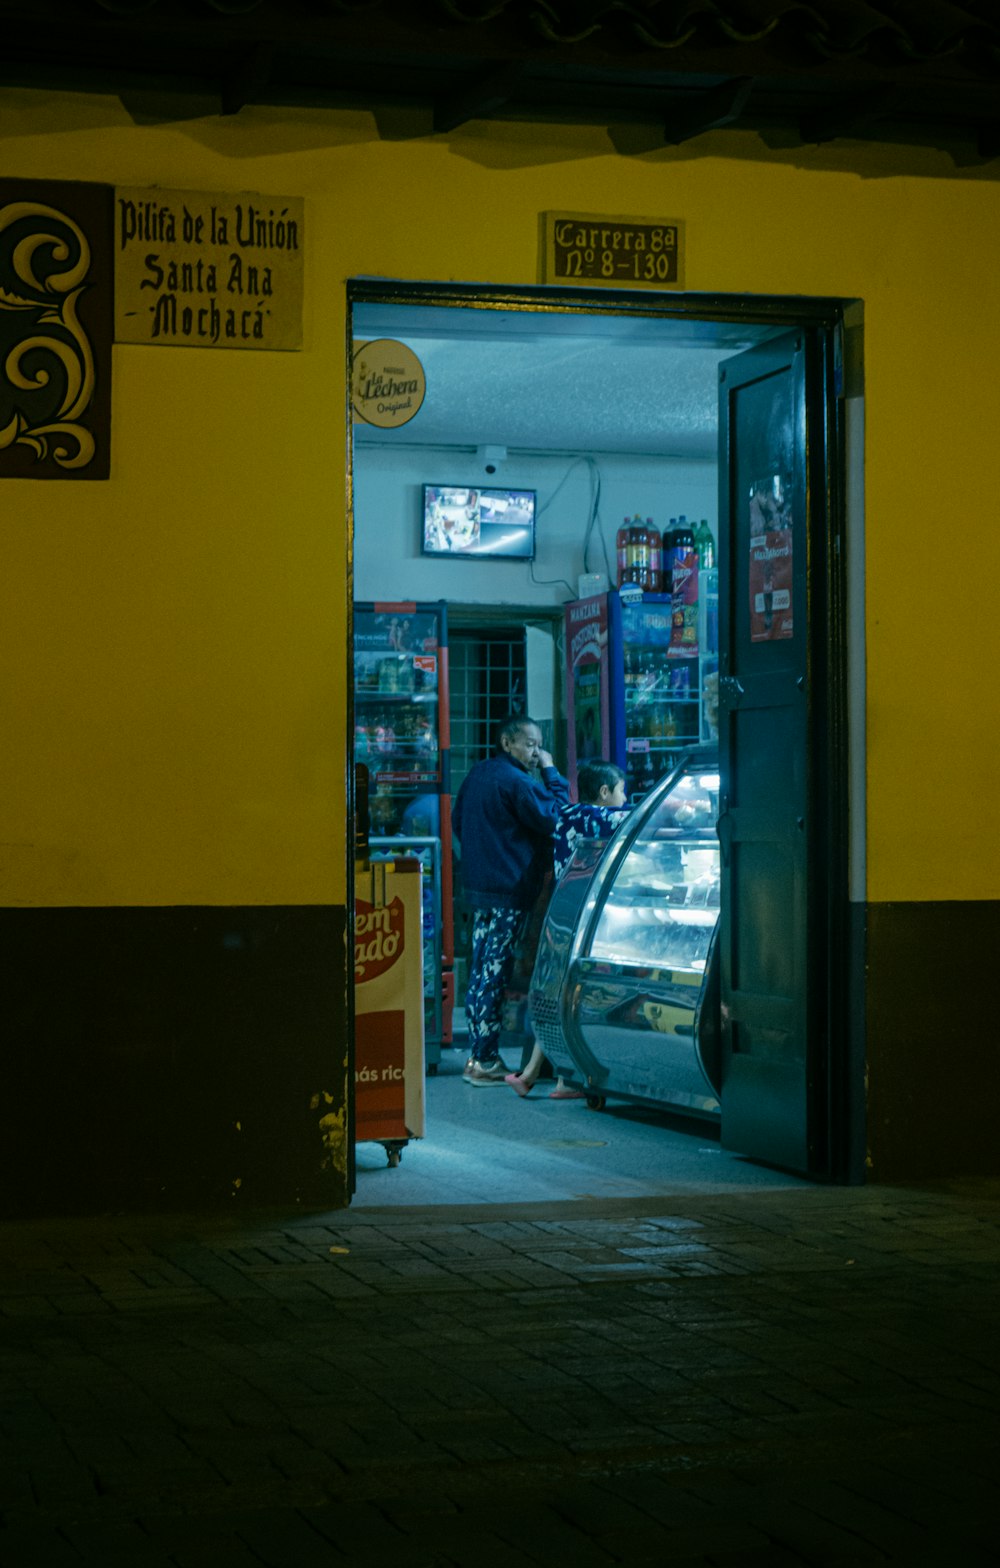 a man opening a car door at night